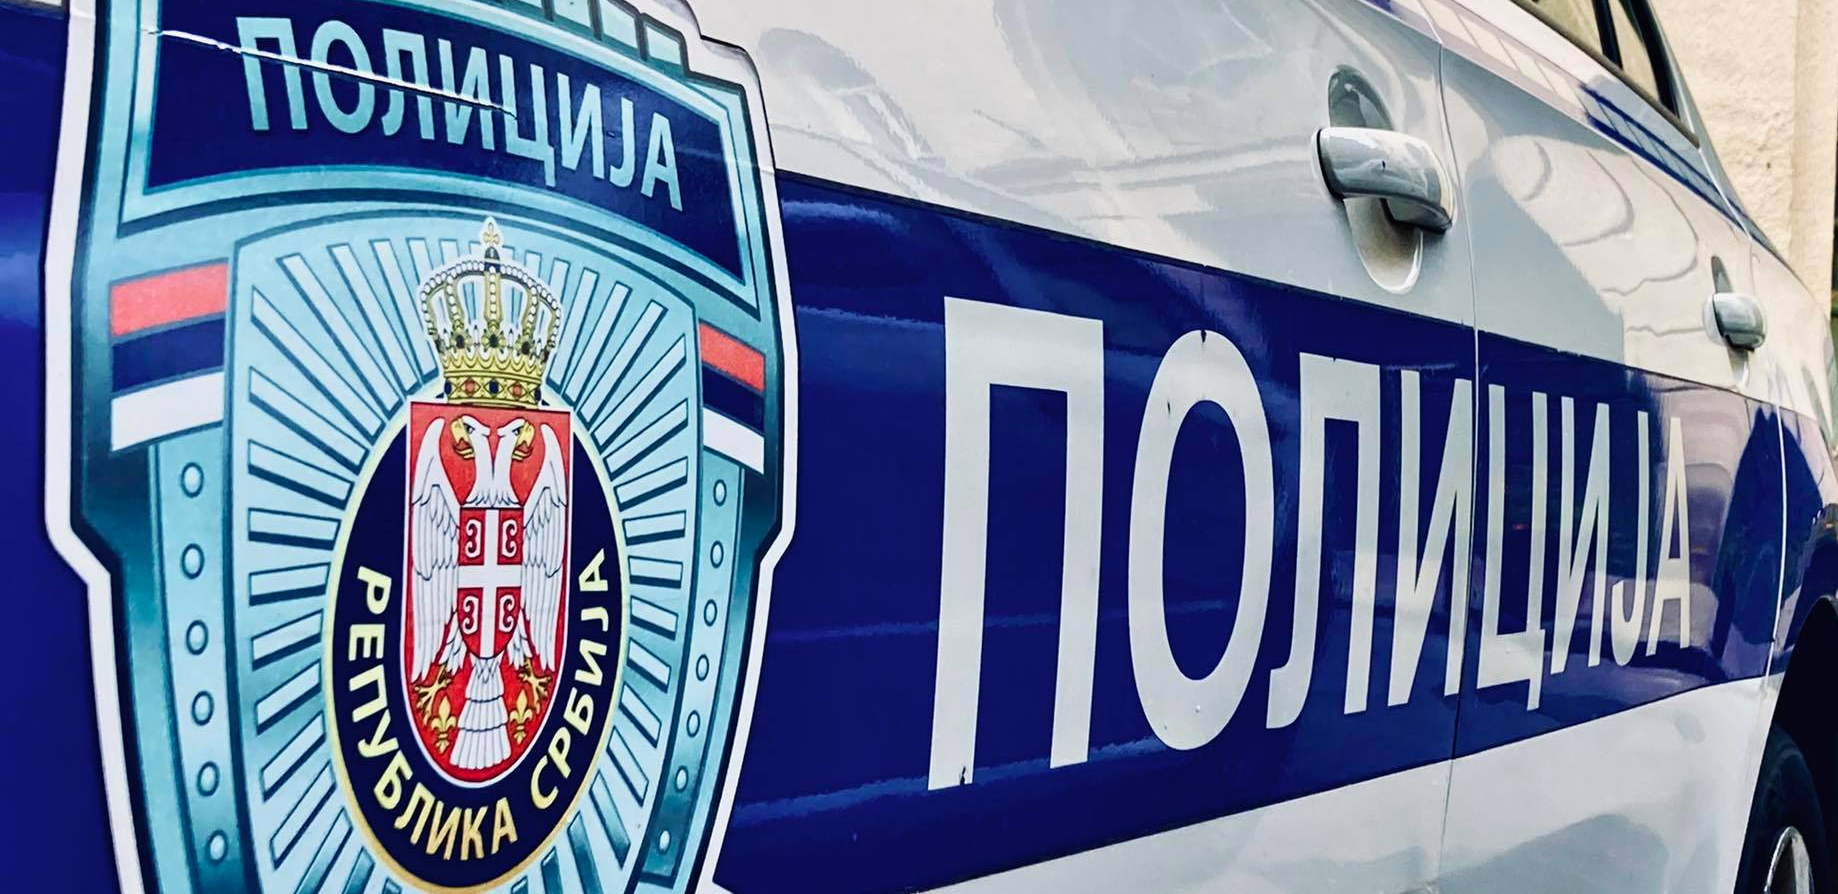 U SITNE SATE RAZBILI STAKLO NA IZLOGU, PA UKRALI MOBILNE TELEFONE U Novom Sadu uhapšena dvojica osumnjičenih kradljivaca